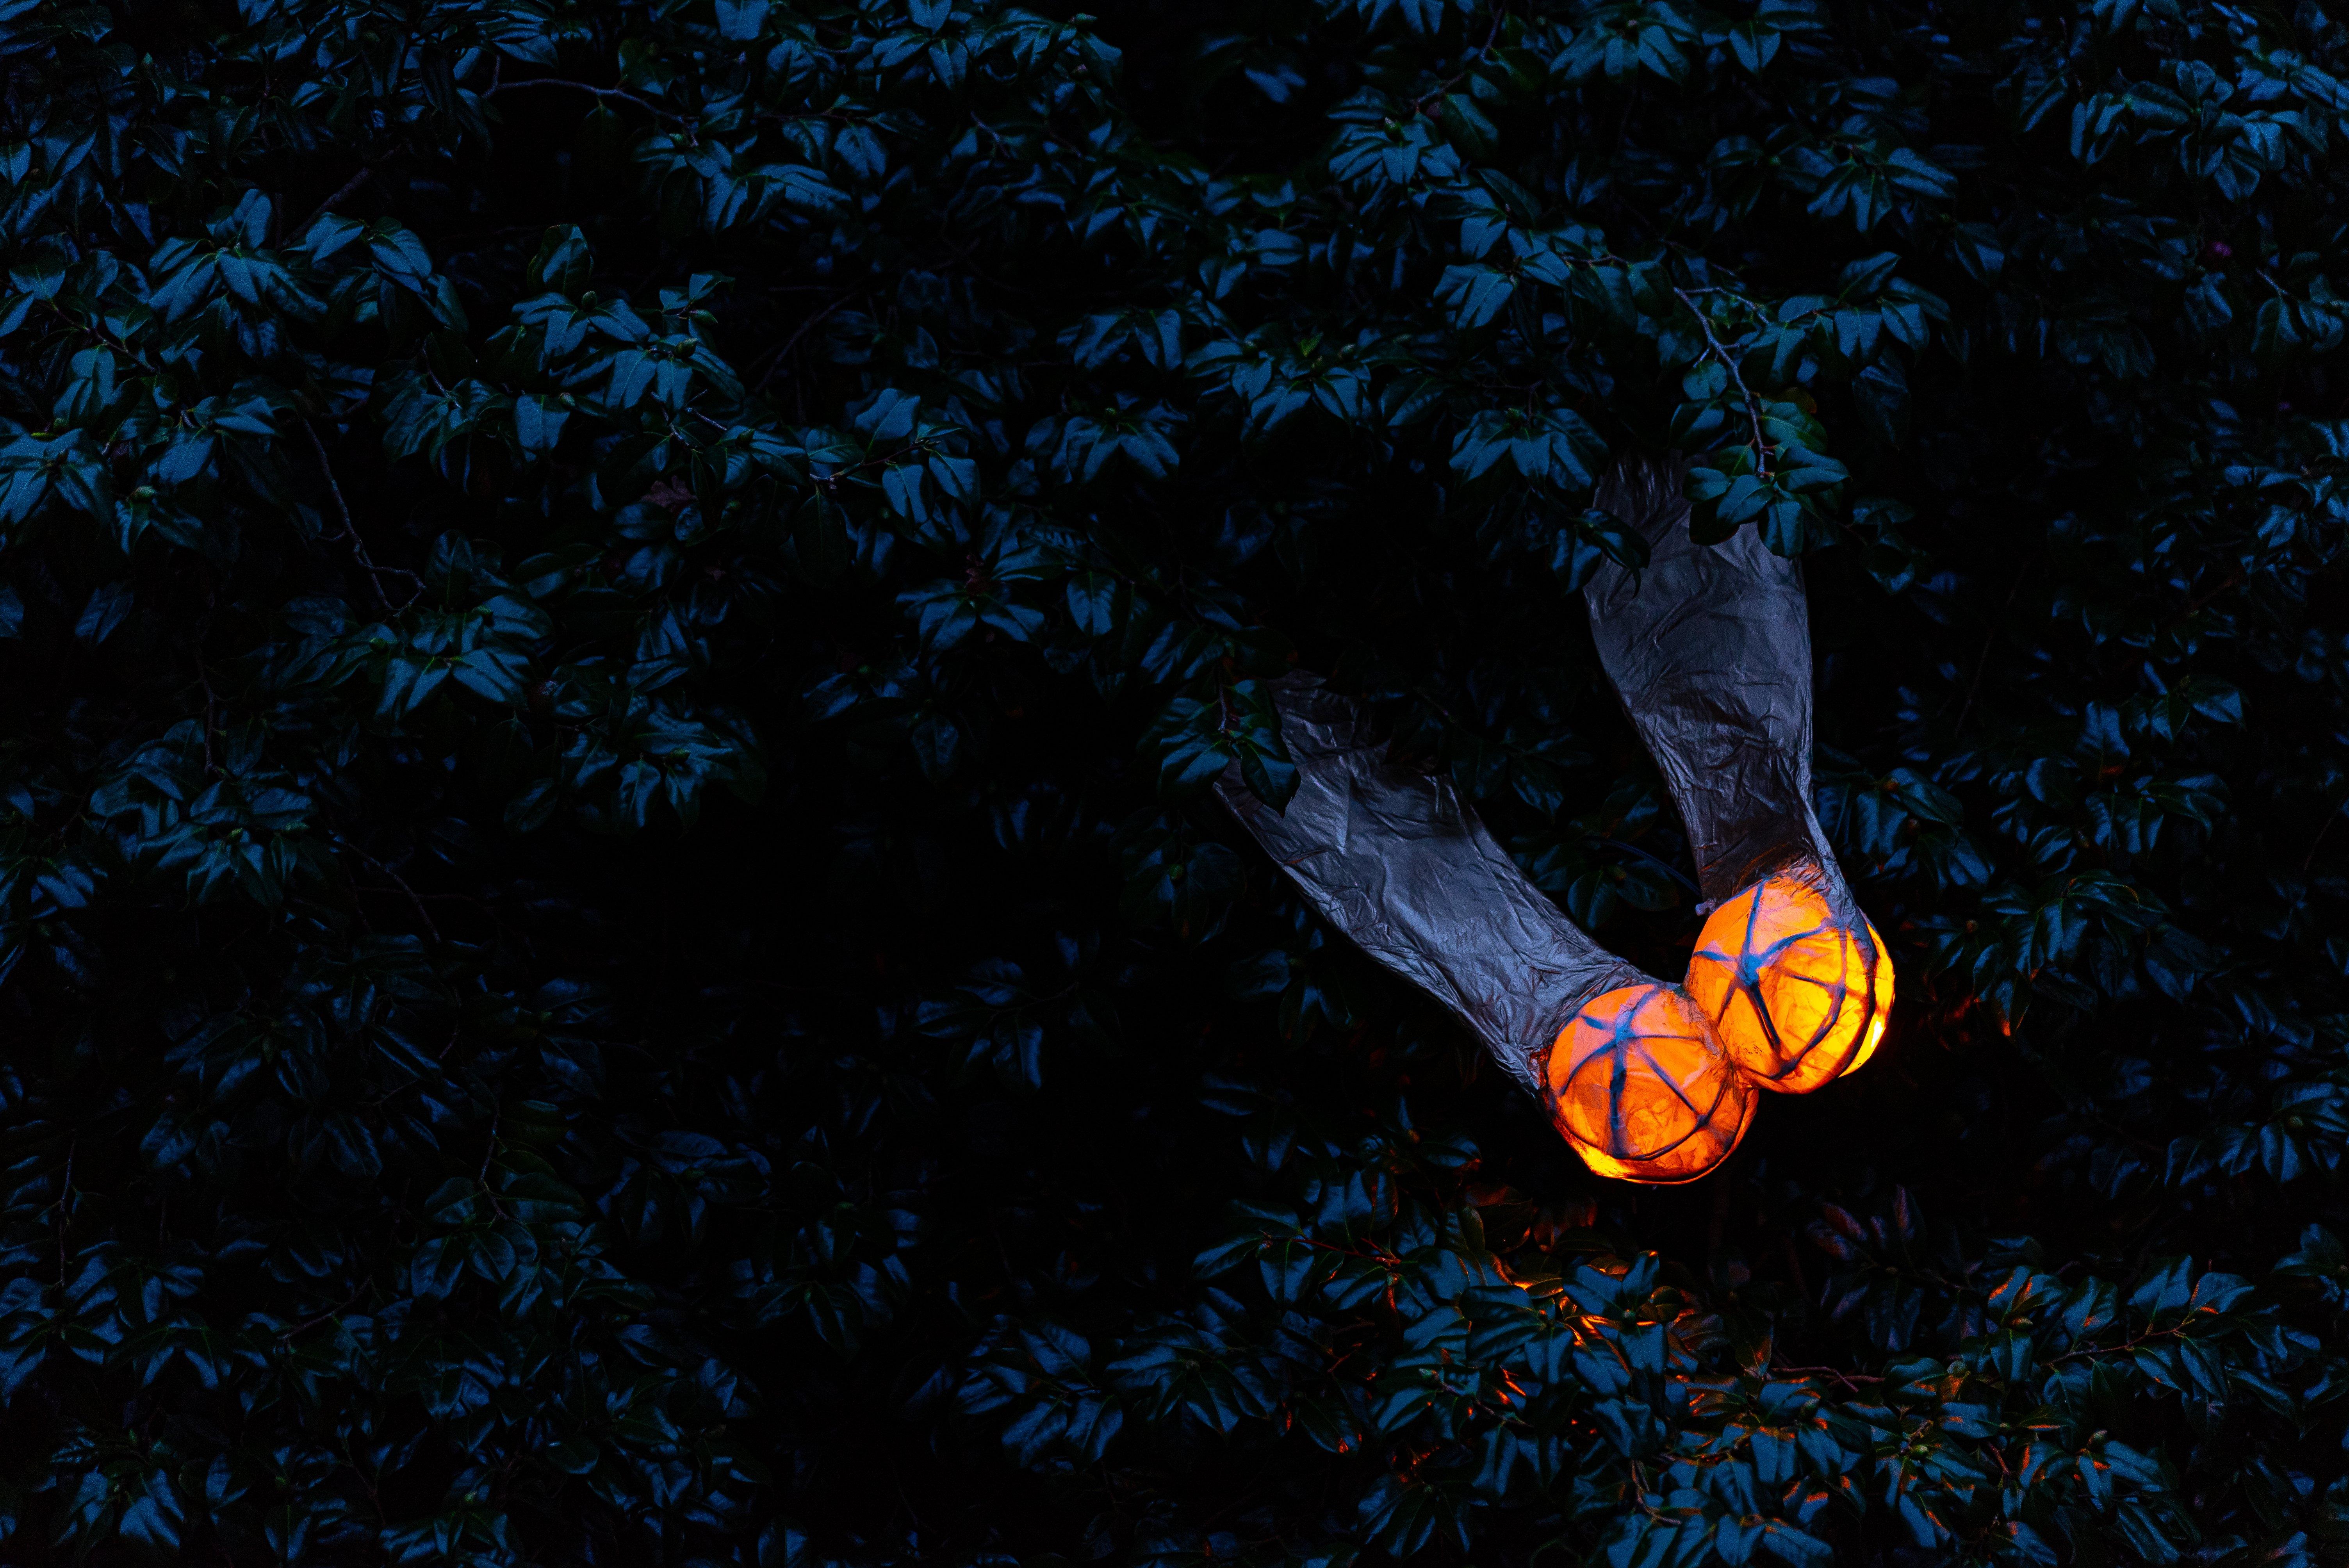 Night lights. Credit: John White © RBG Kew